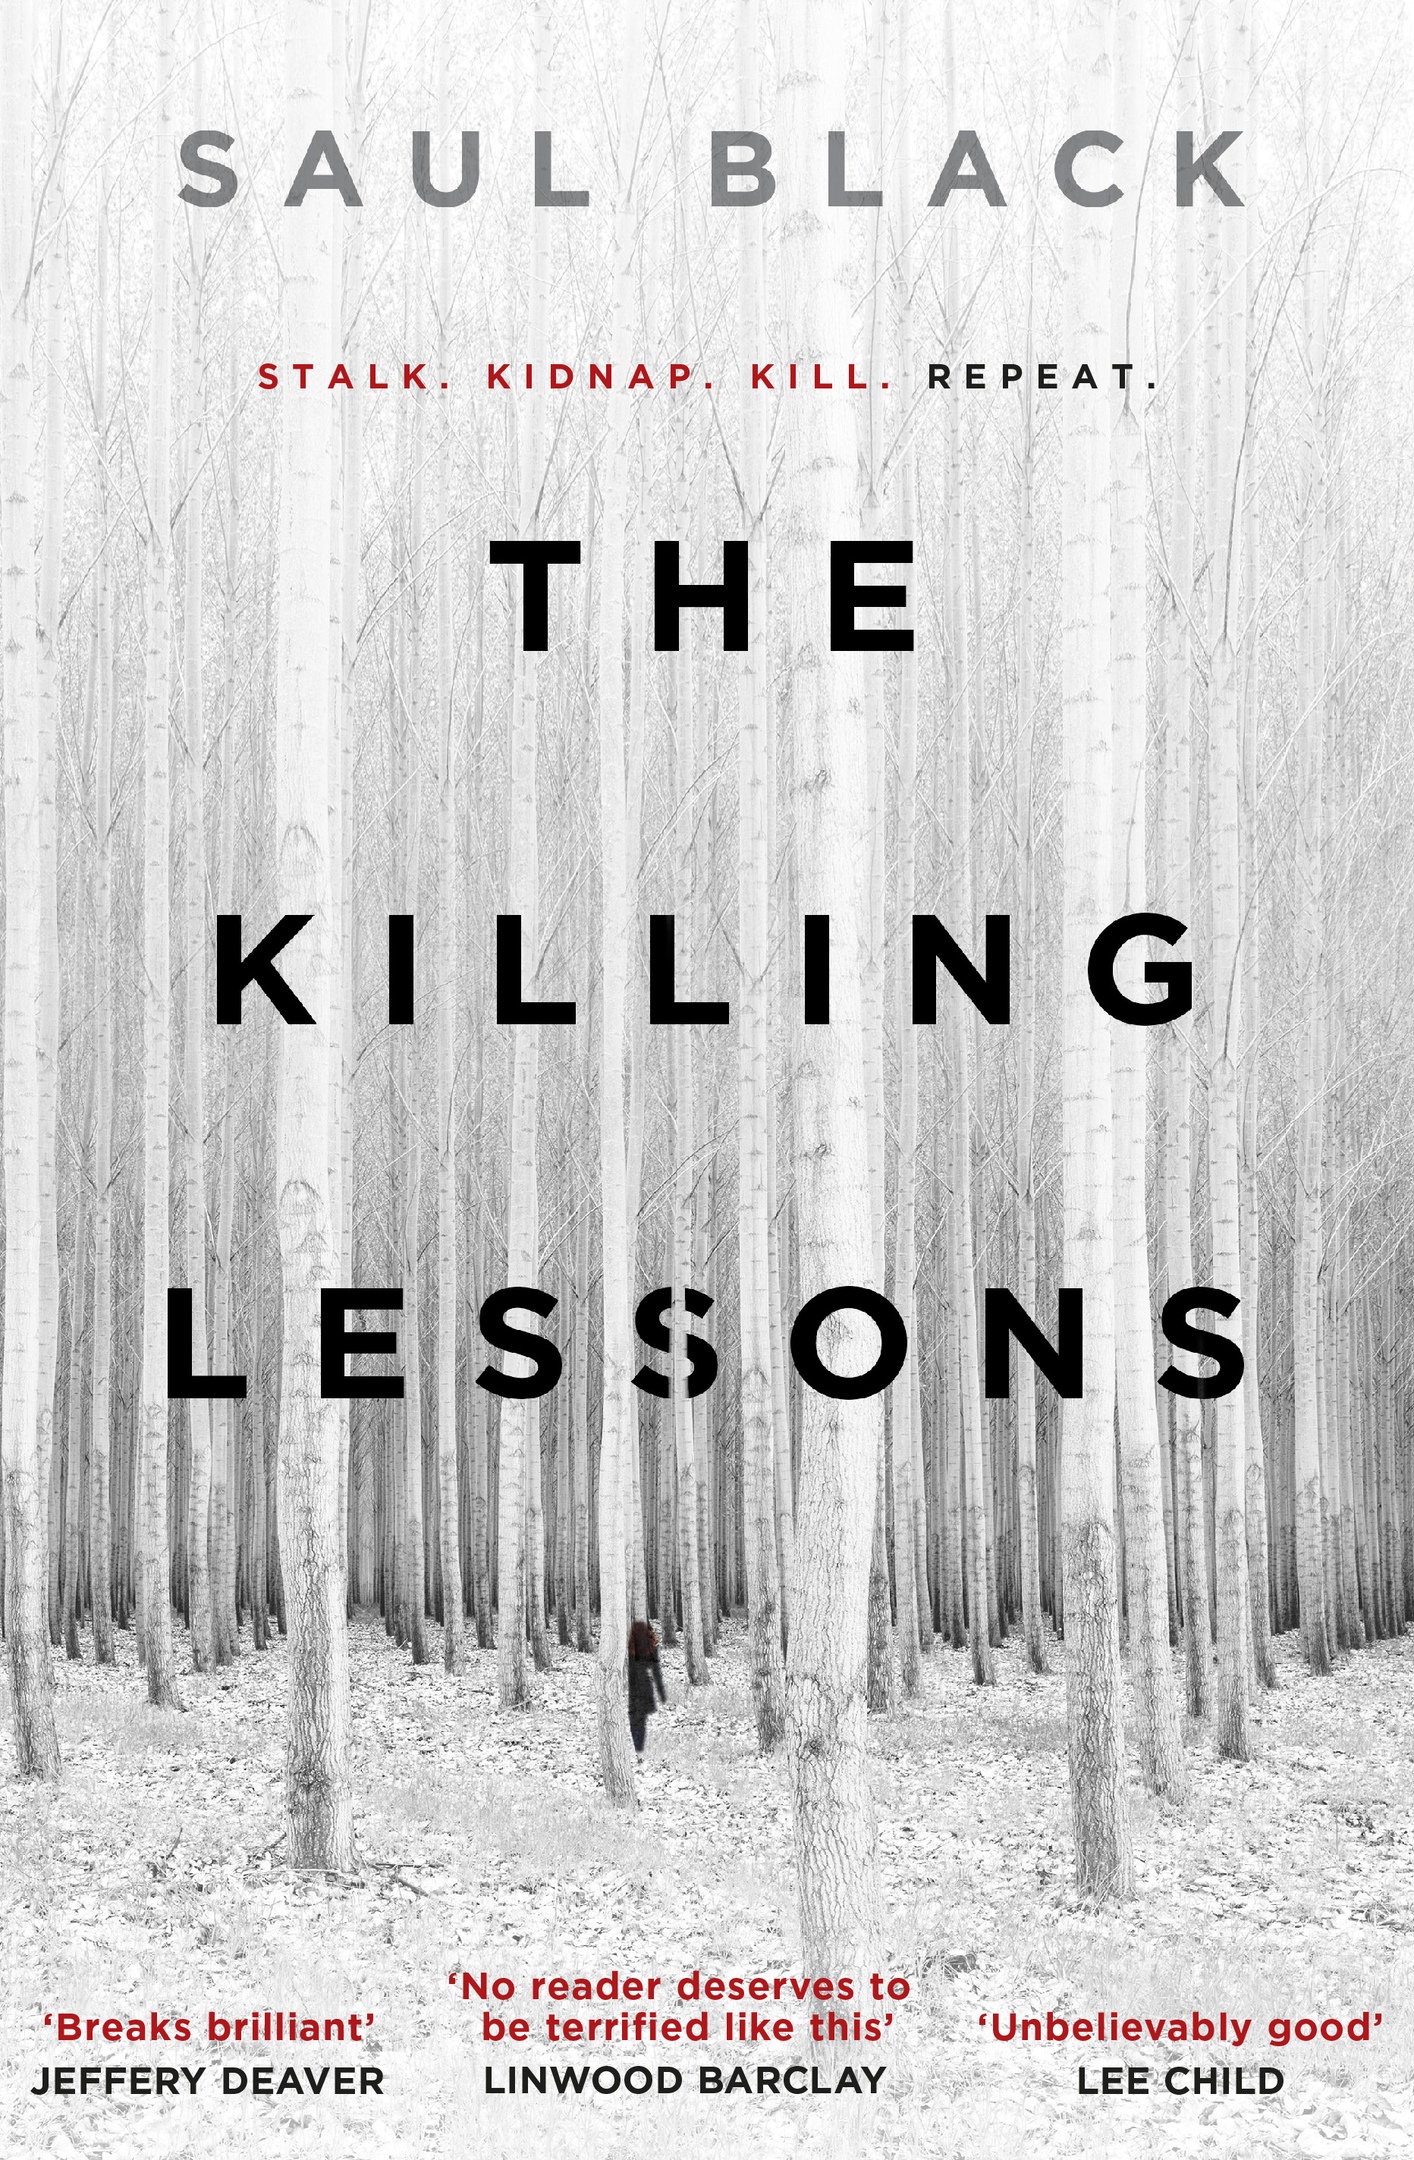 Saul Black – The Killing Lessons